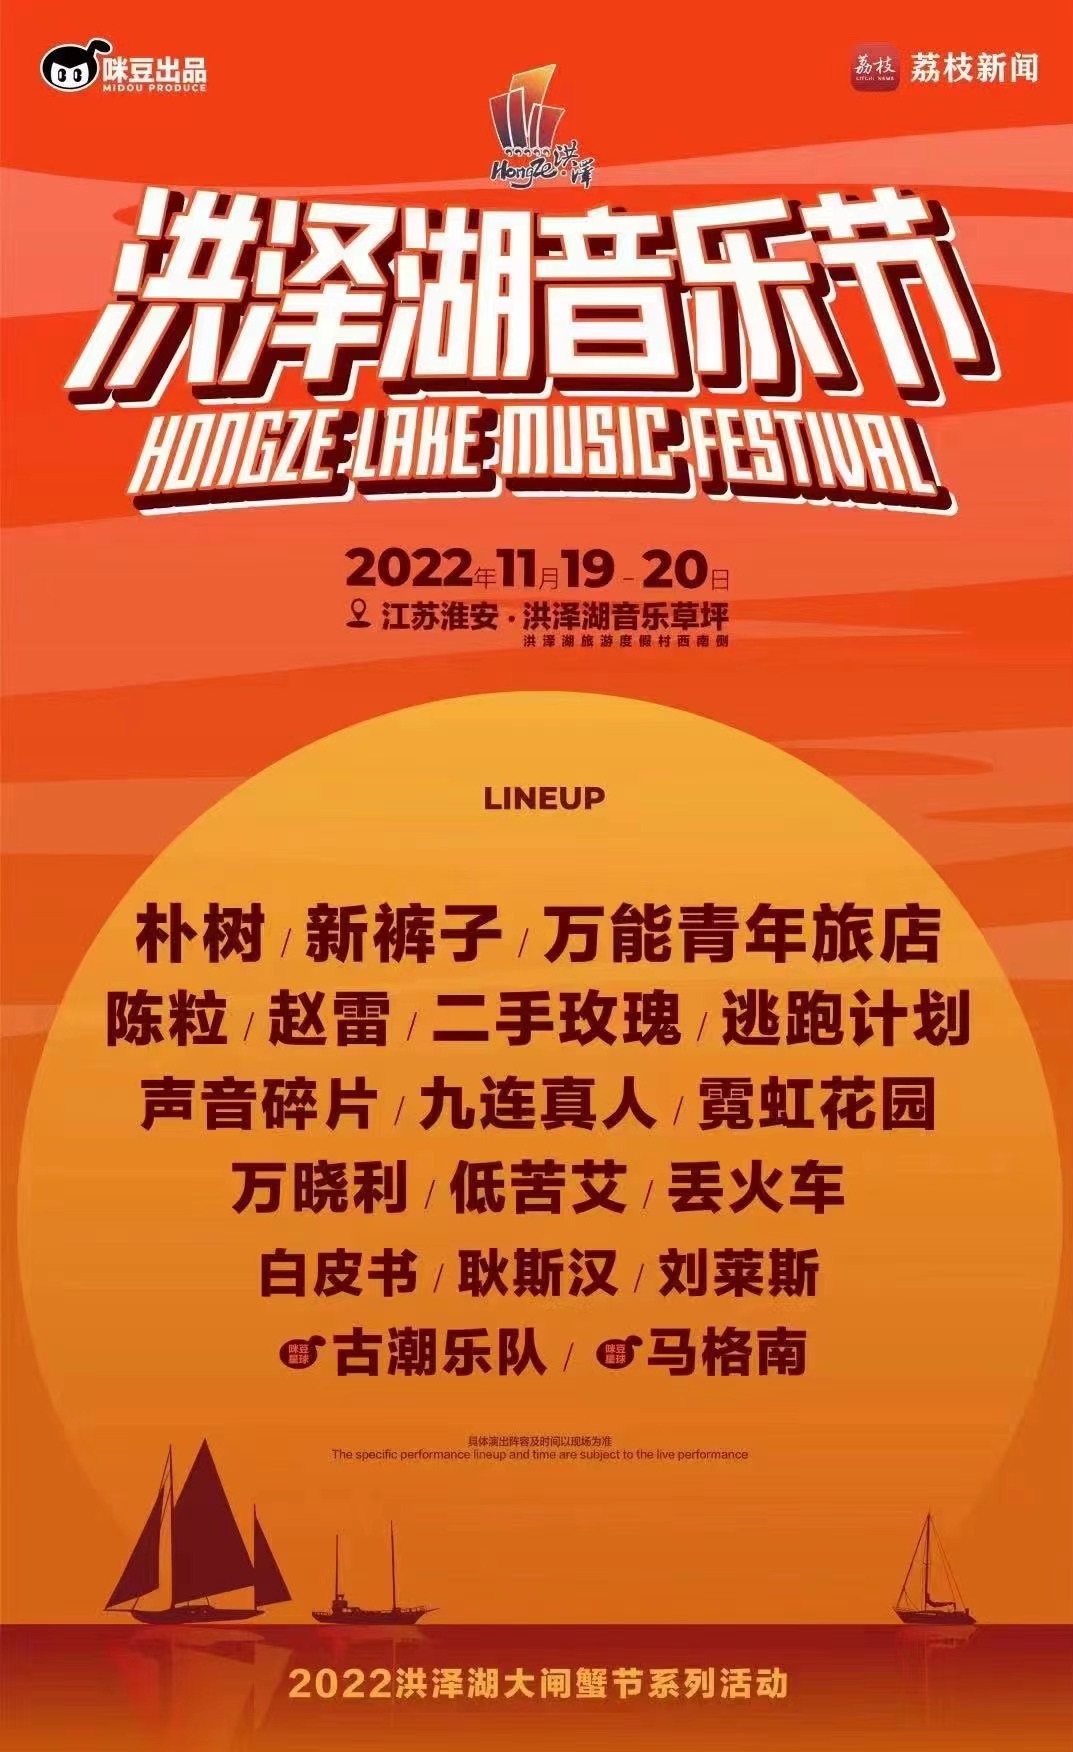 2022淮安洪泽湖音乐节阵容安排、订票链接